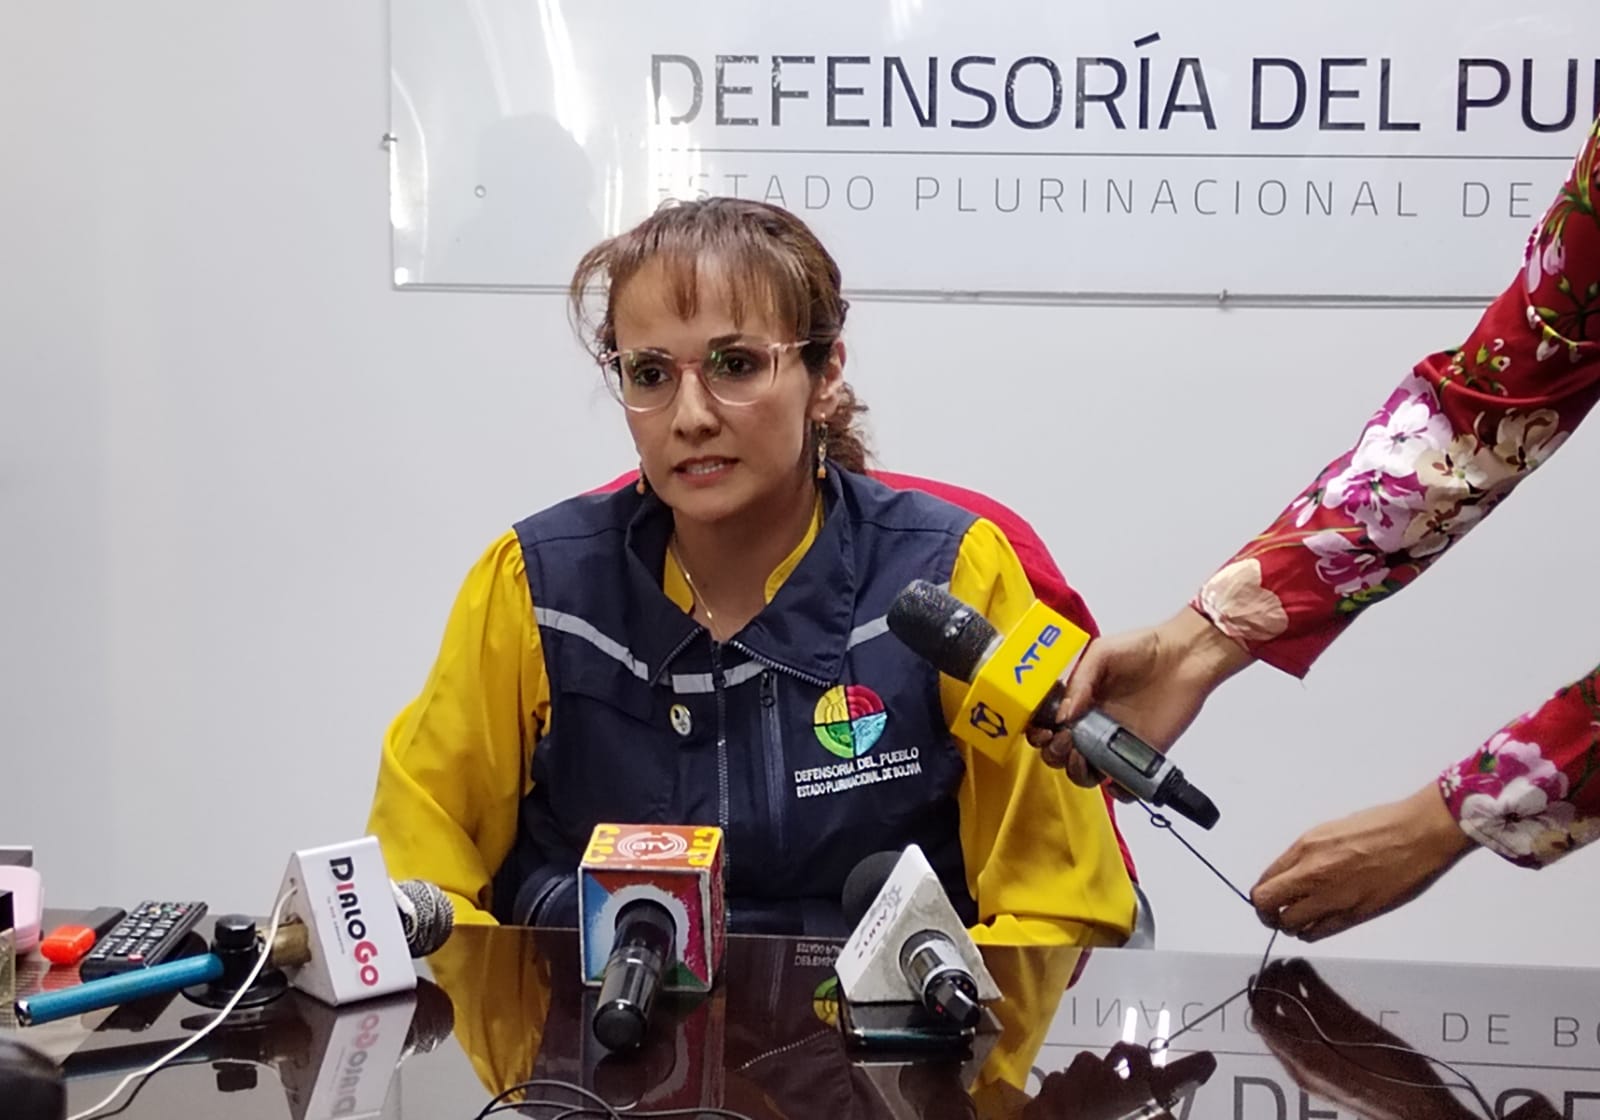 Defensoría del Pueblo reprocha participación de niños y adolescentes en peleas de eventos públicos en Cochabamba y pide se investigue el hecho